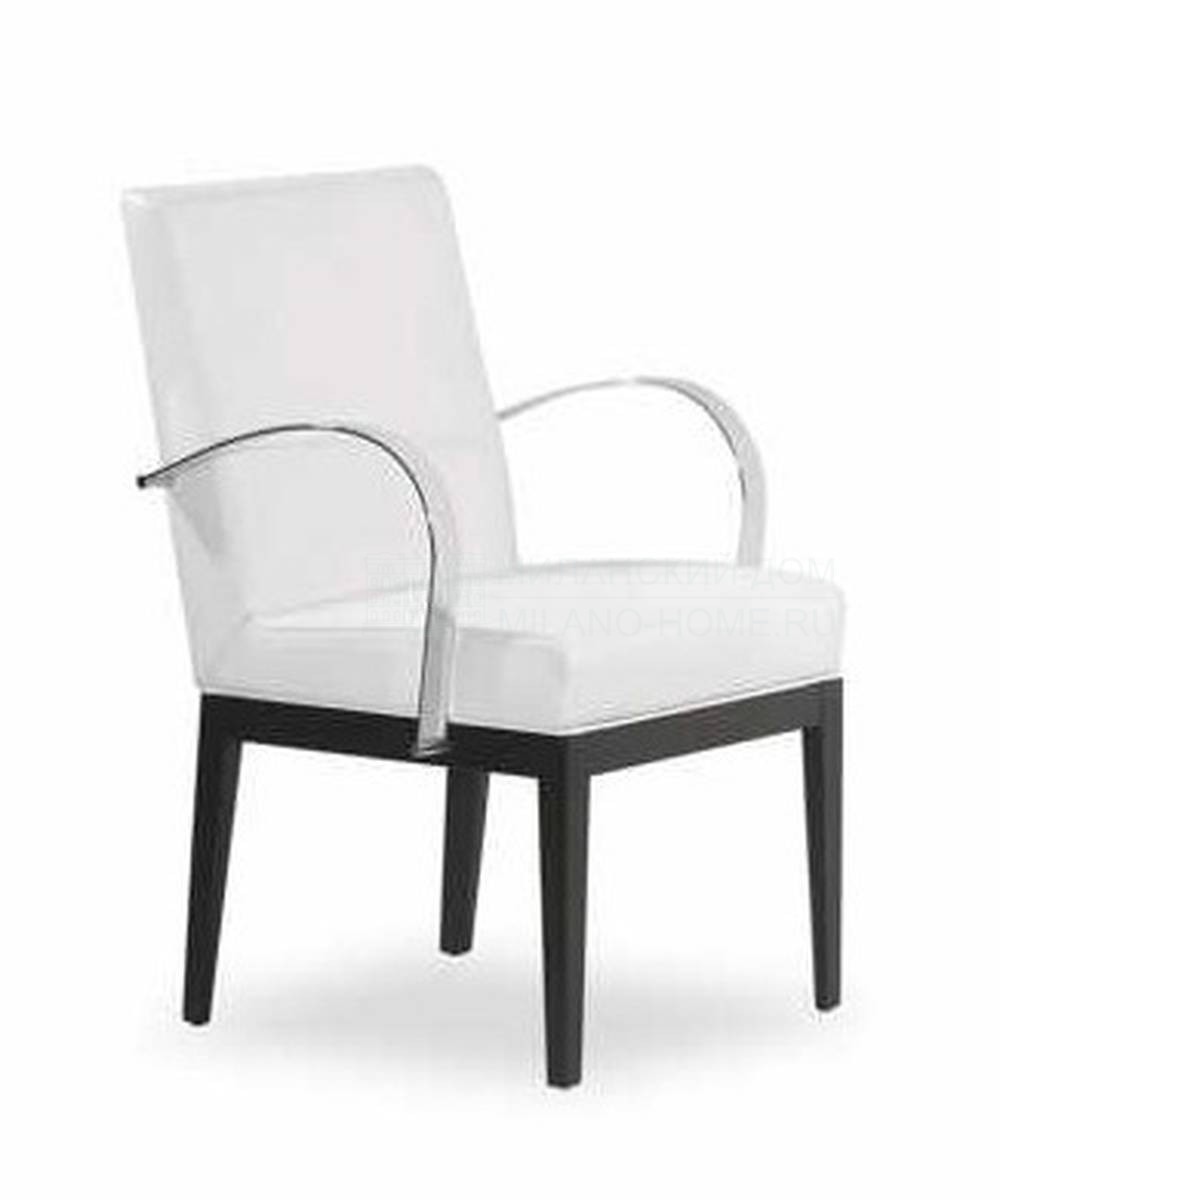 Полукресло Diva chair из Италии фабрики TONON